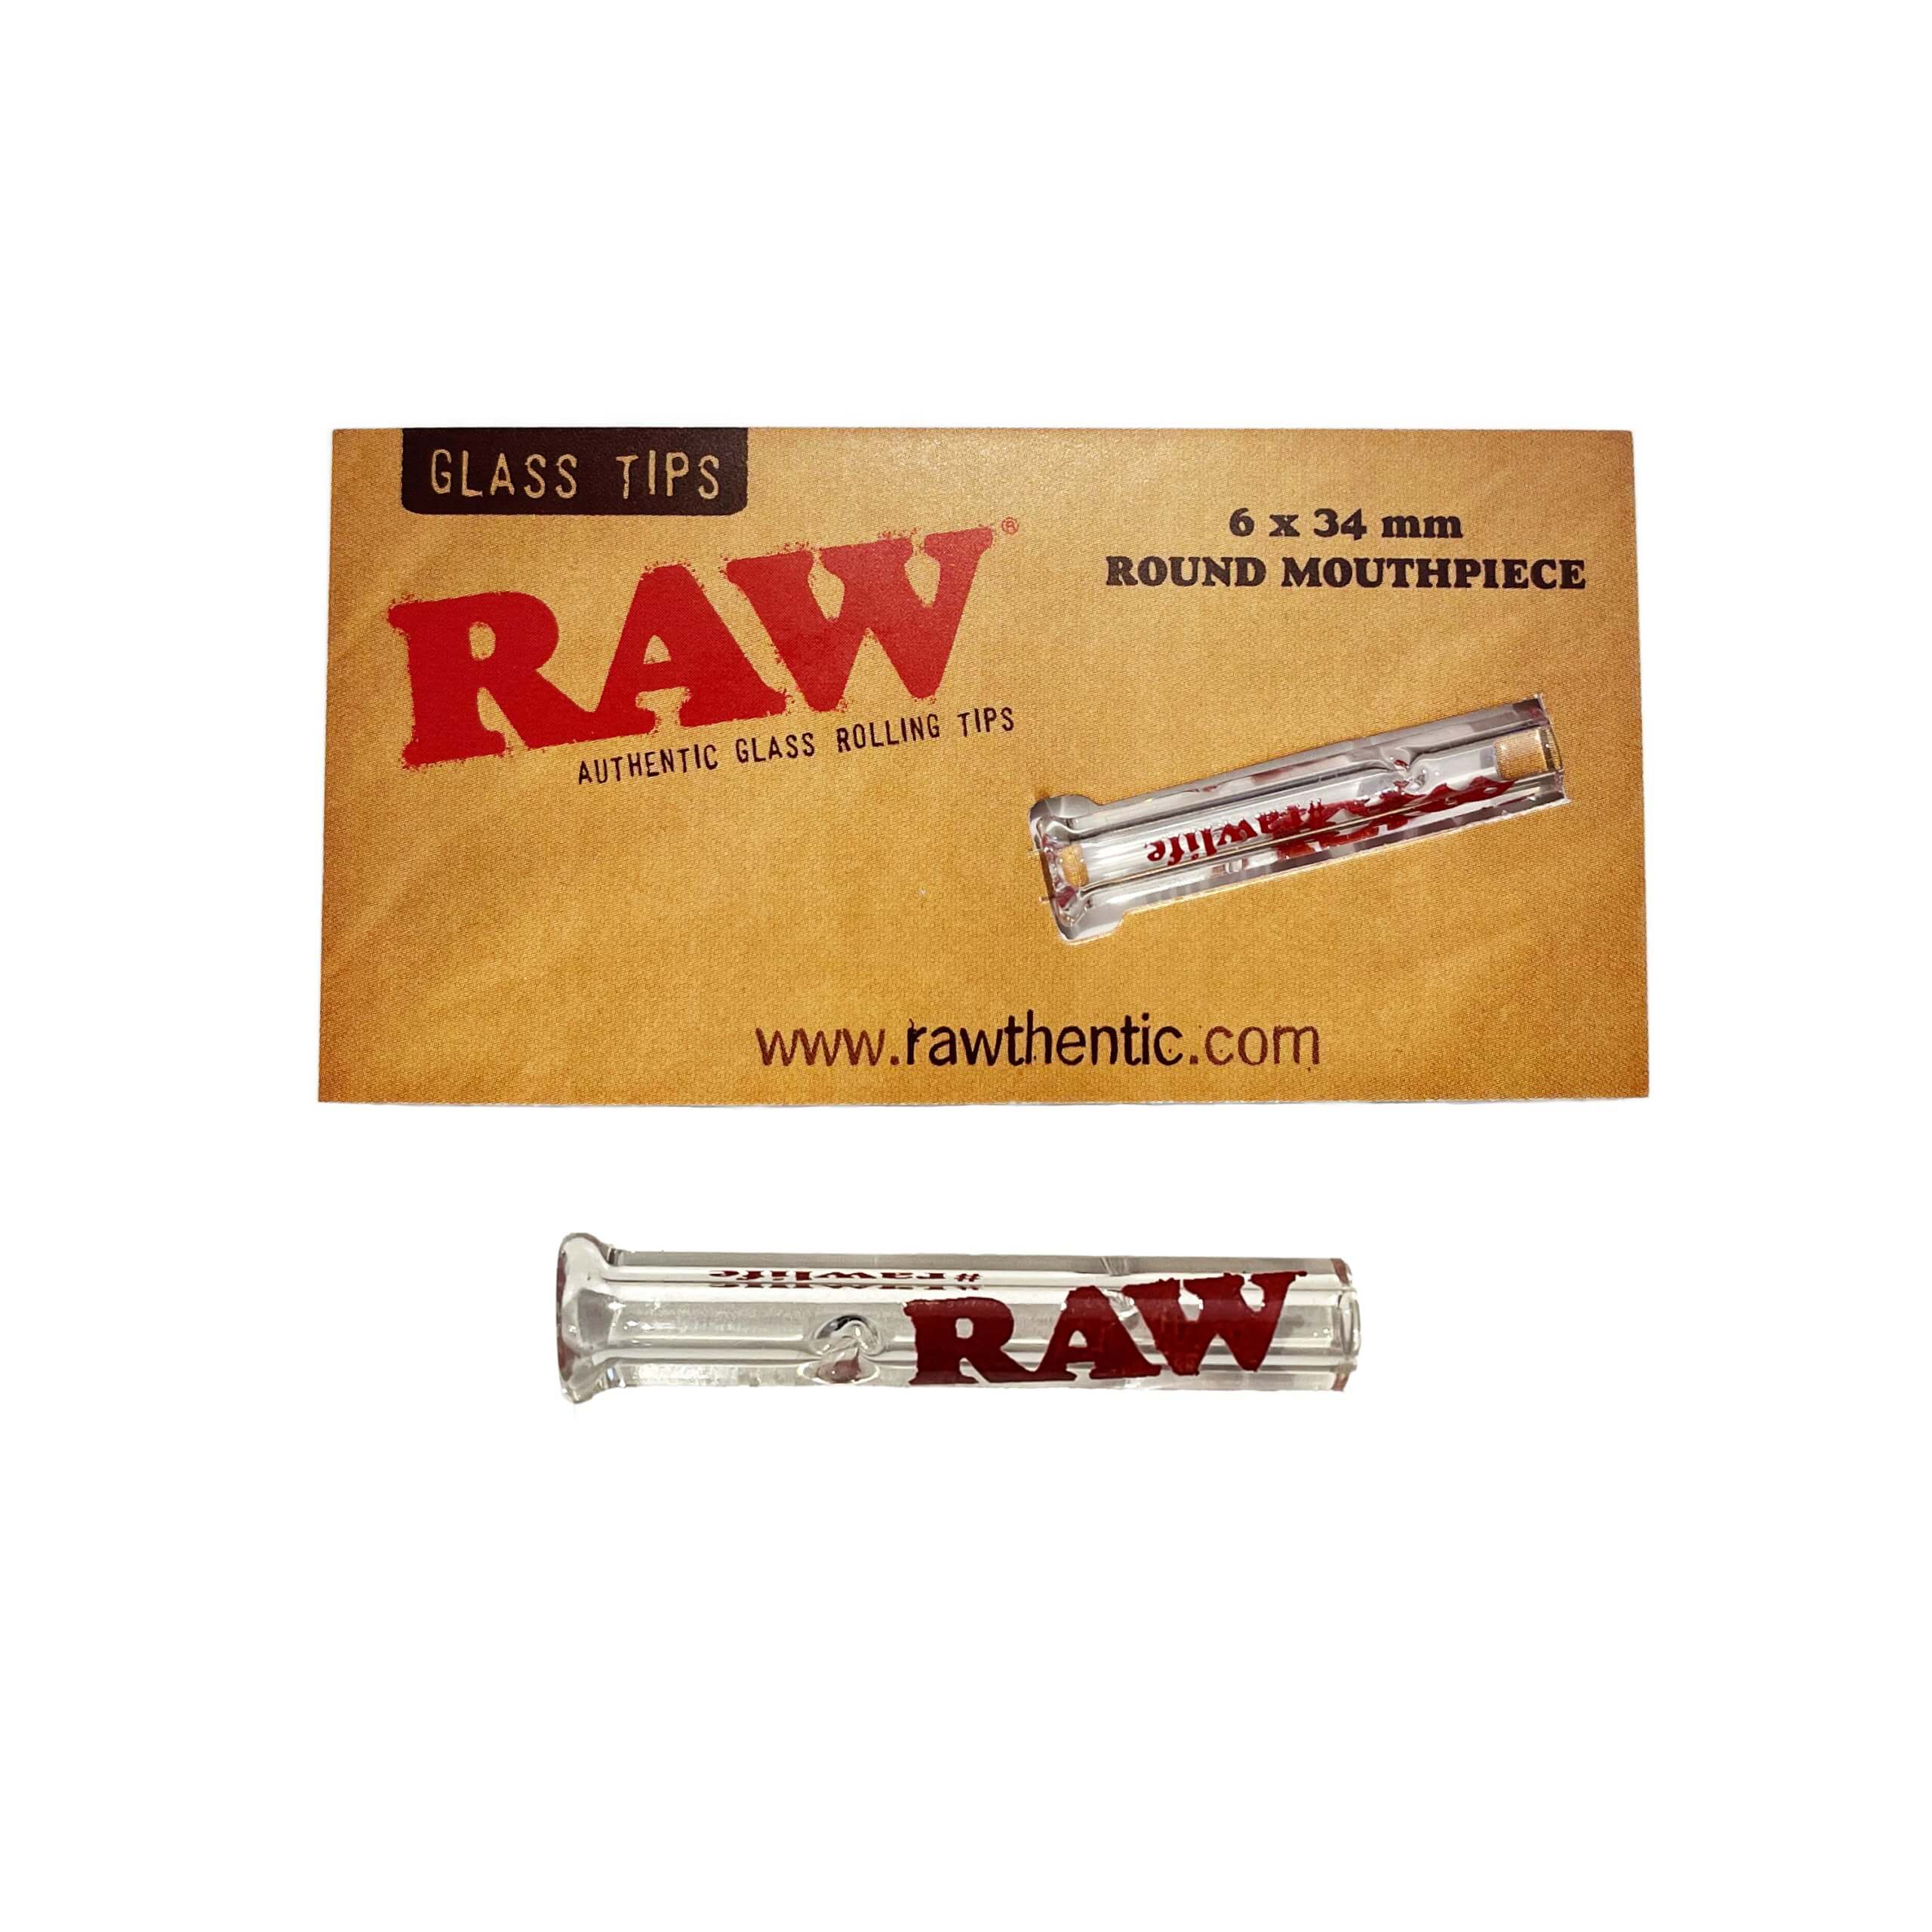 RAW Glass Tips 6 x 34 mm Round Mouthpiece